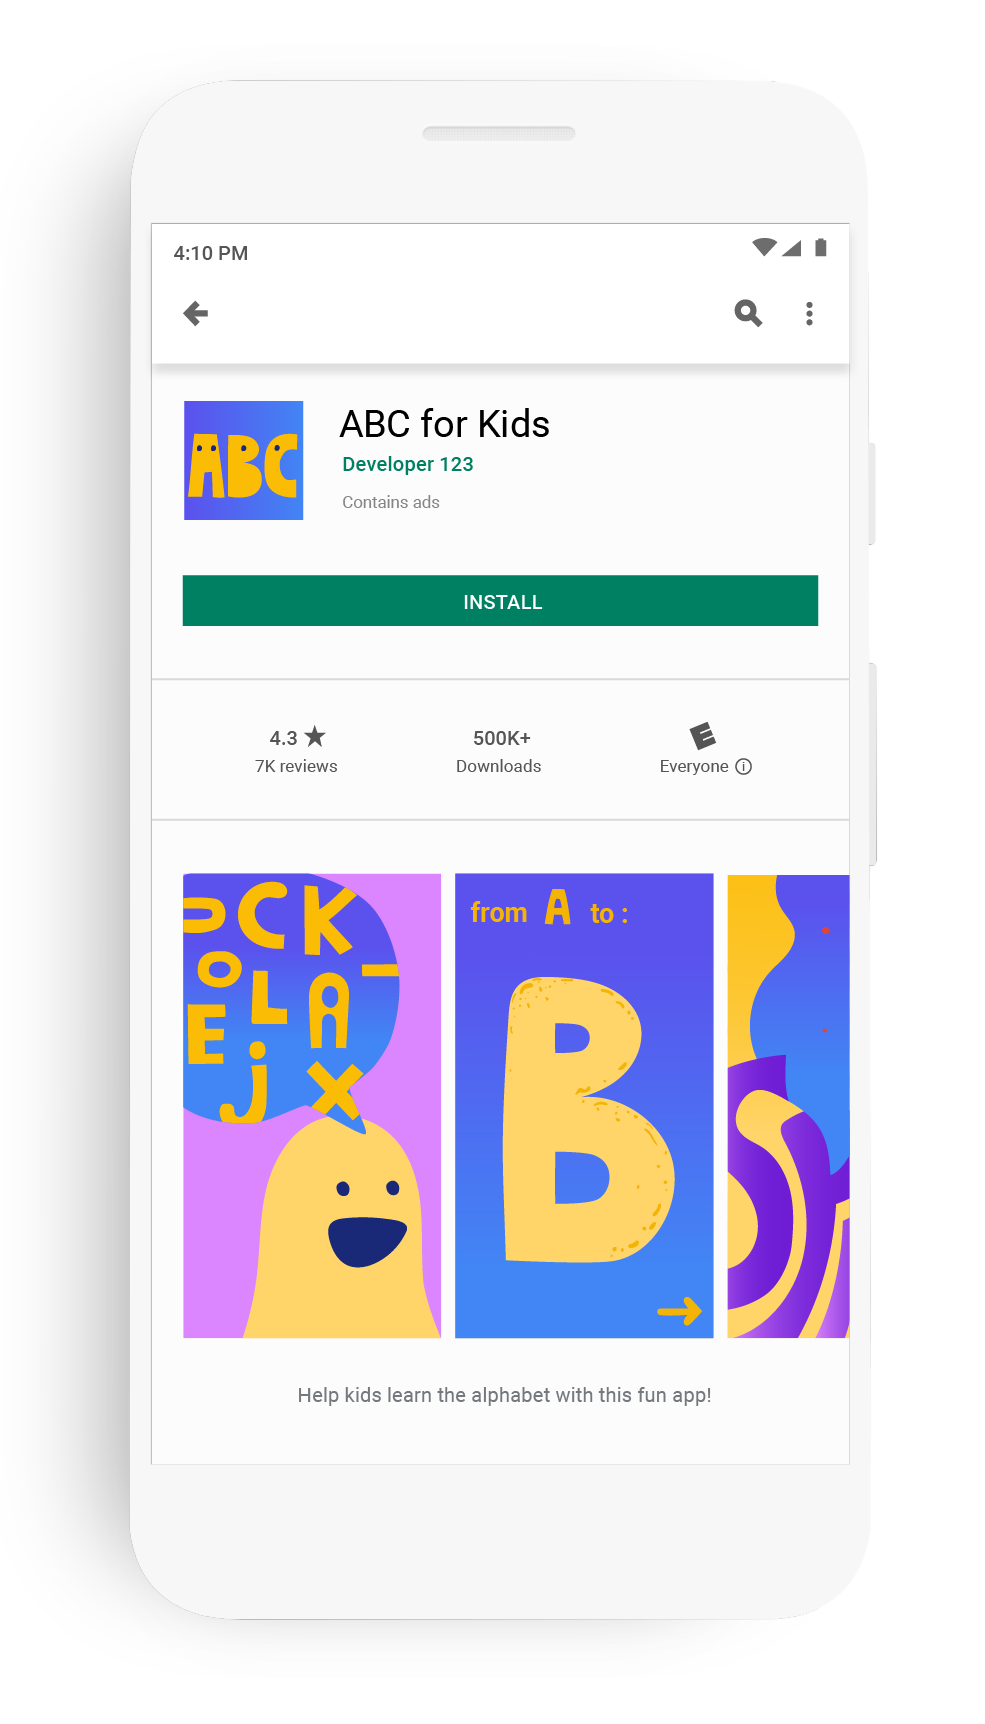 App para crianças - Jogos crianças gratis 1, 2, 3, 4  anos::Appstore for Android